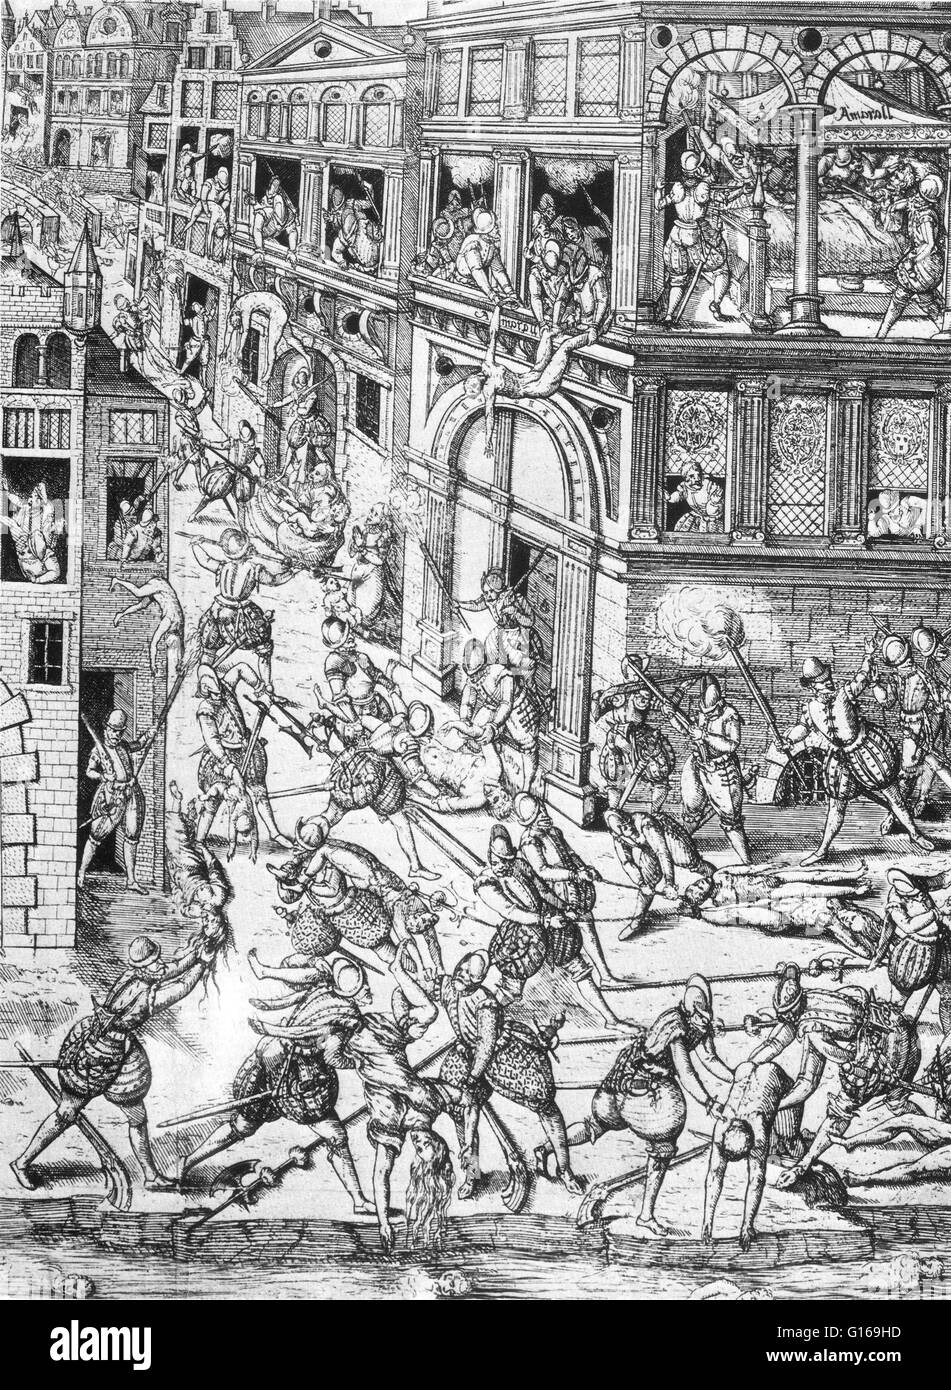 Le massacre de la Saint-Barthélemy en 1572 était un groupe cible d'assassinats, suivie par une vague de violence collective Catholique Romaine, tous deux dirigés contre les Huguenots, pendant les Guerres de Religion. Traditionnellement admis d'avoir été à l'origine b Banque D'Images